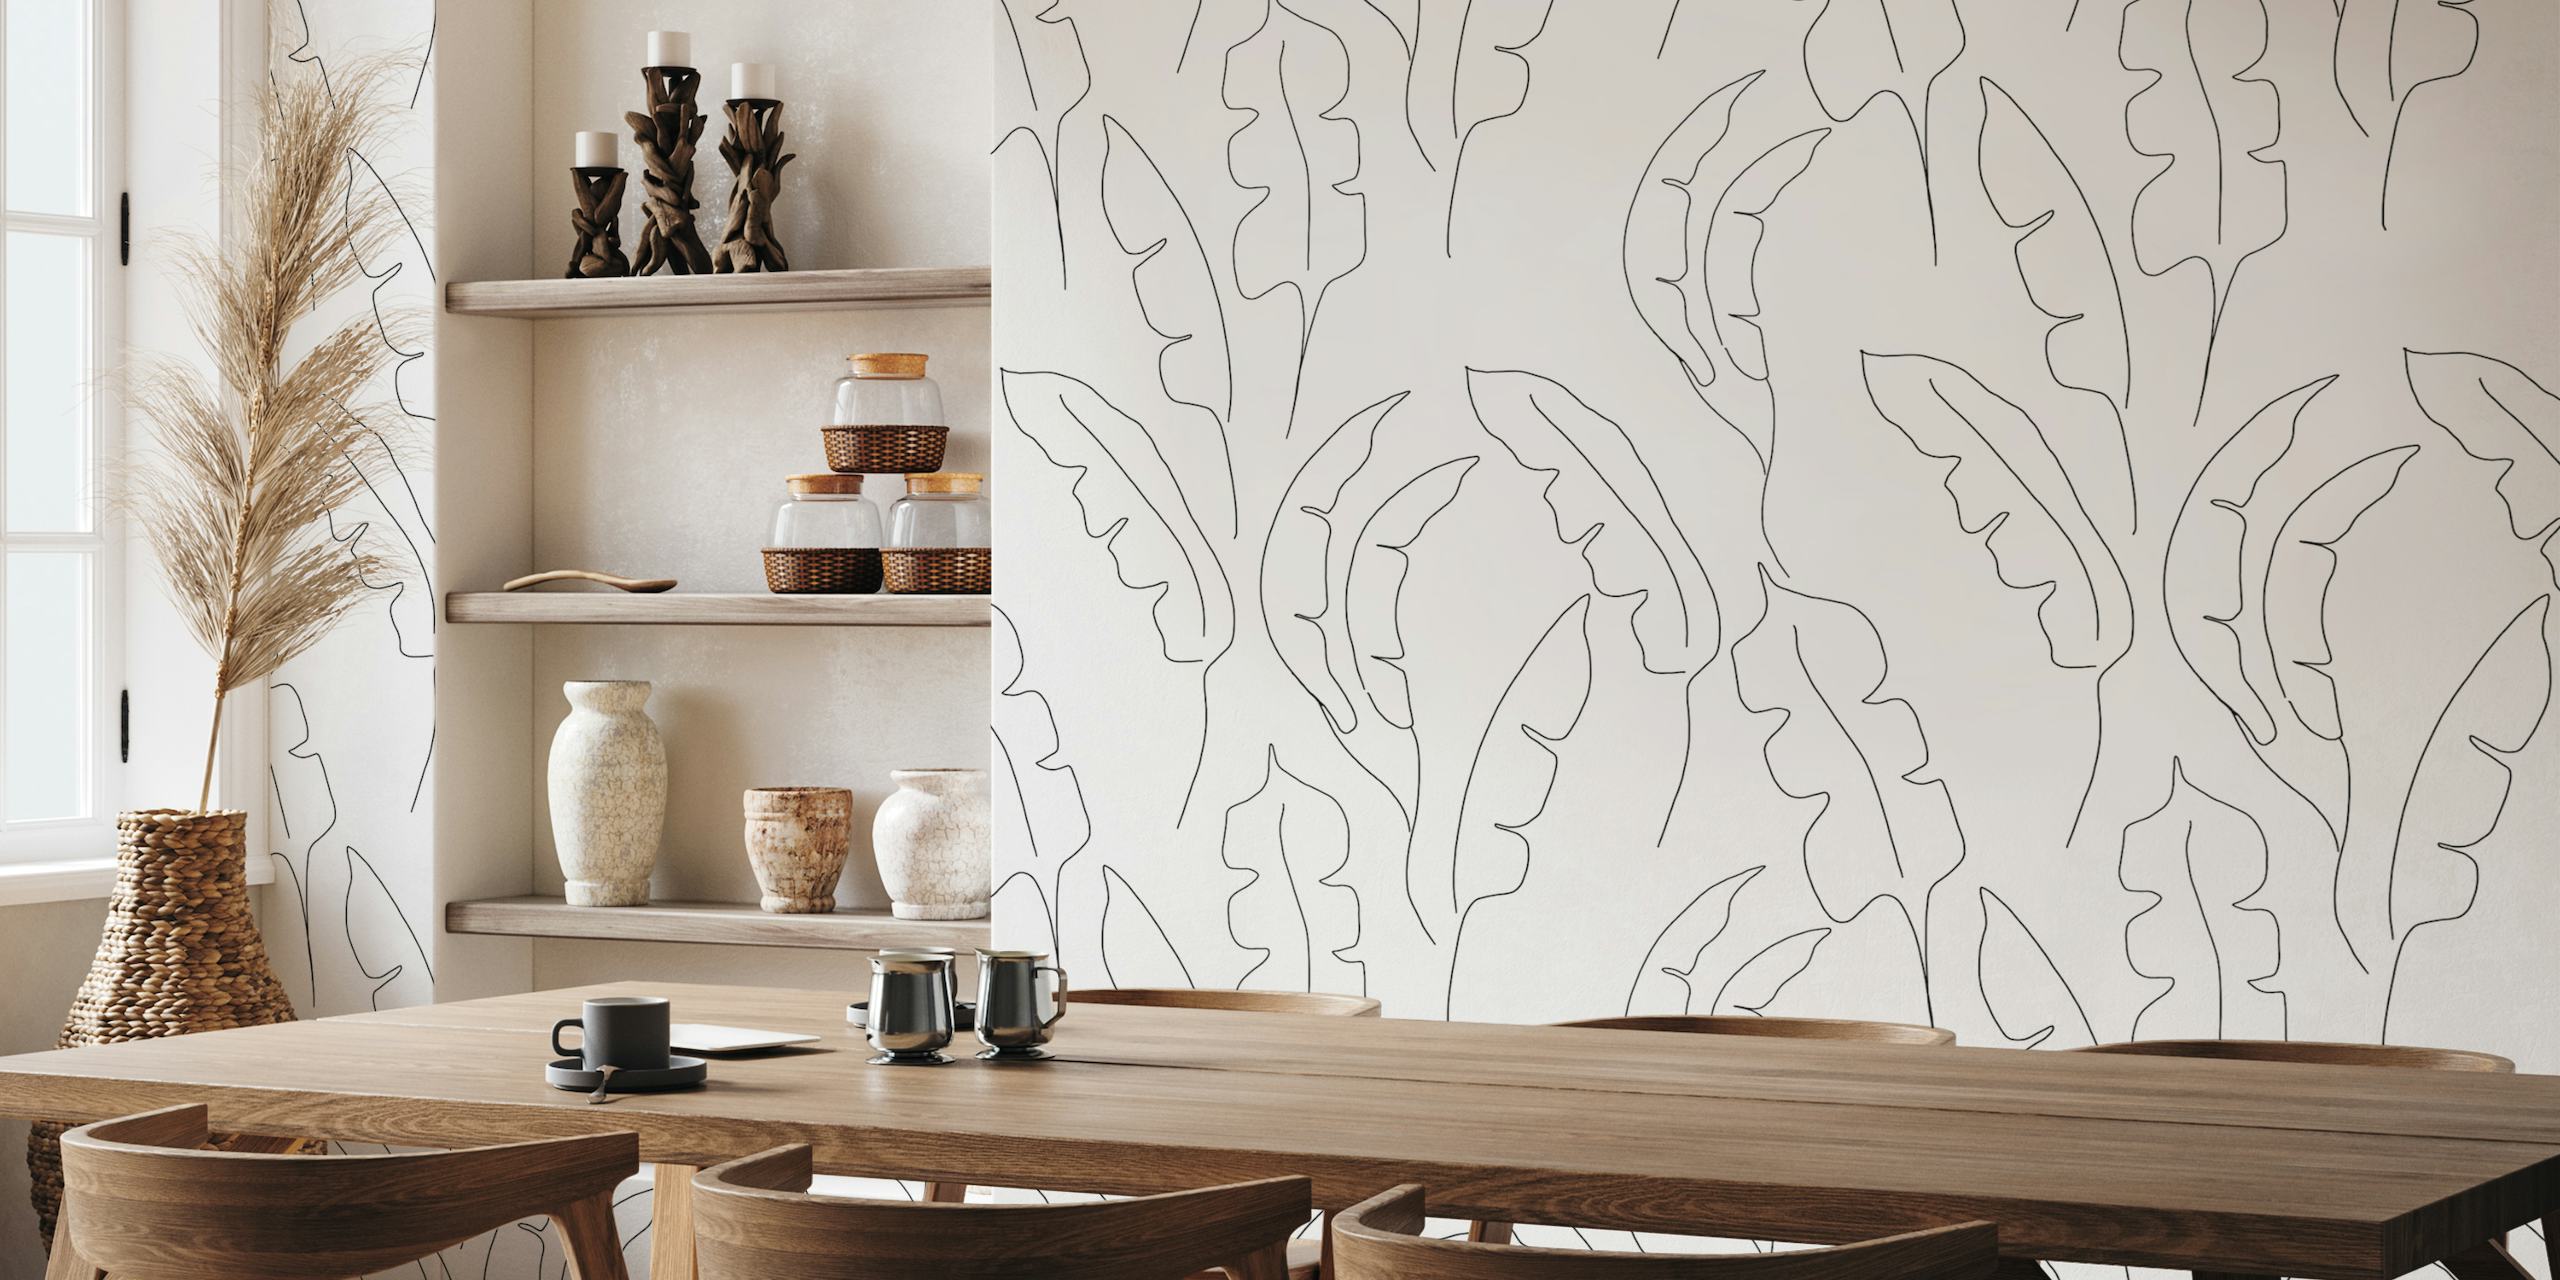 Line art banana leaves pattern wall mural for elegant interiors